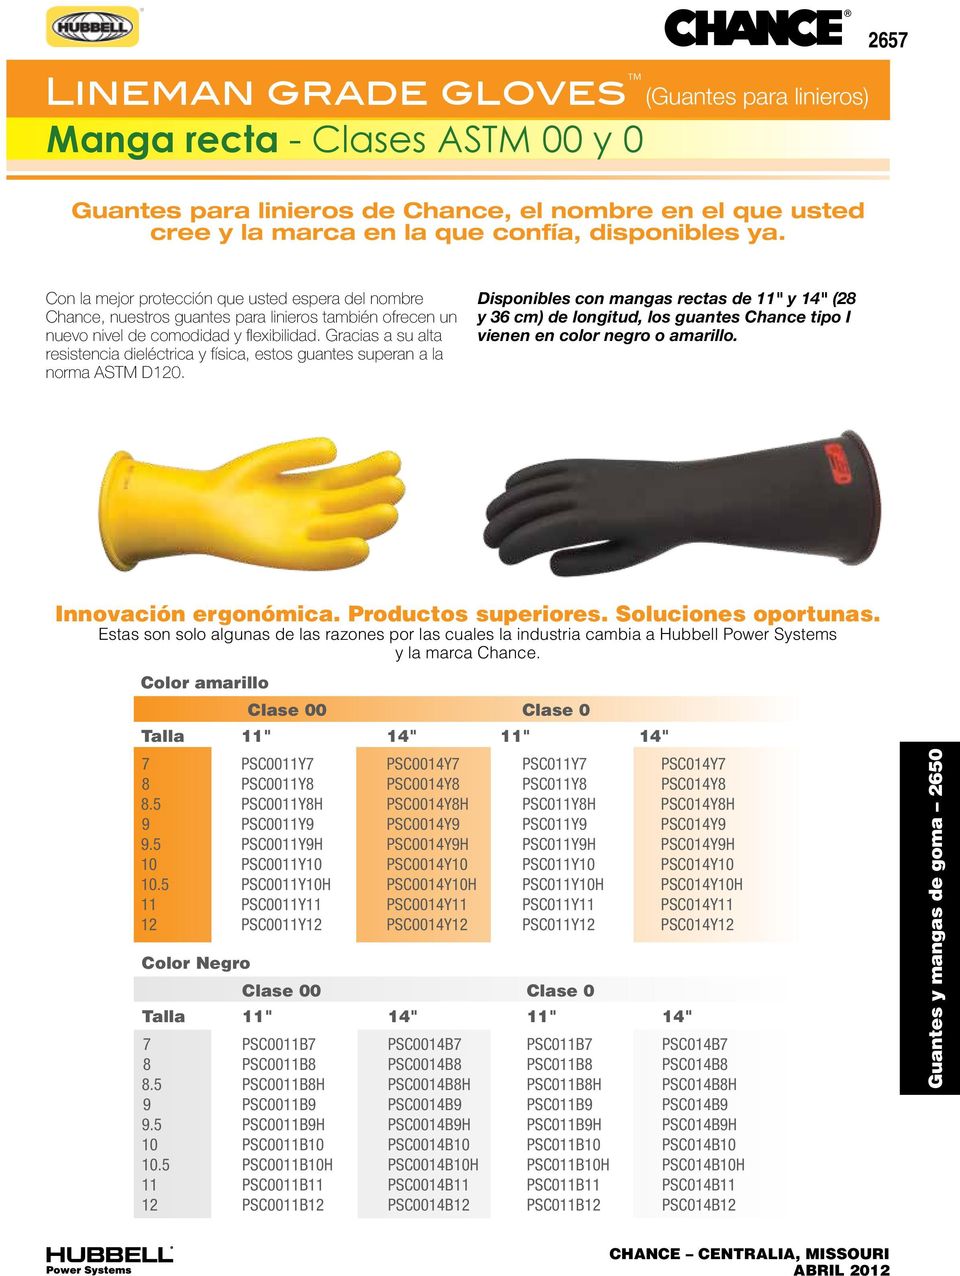 Gracias a su alta resistencia dieléctrica y física, estos guantes superan a la norma ASTM D120.